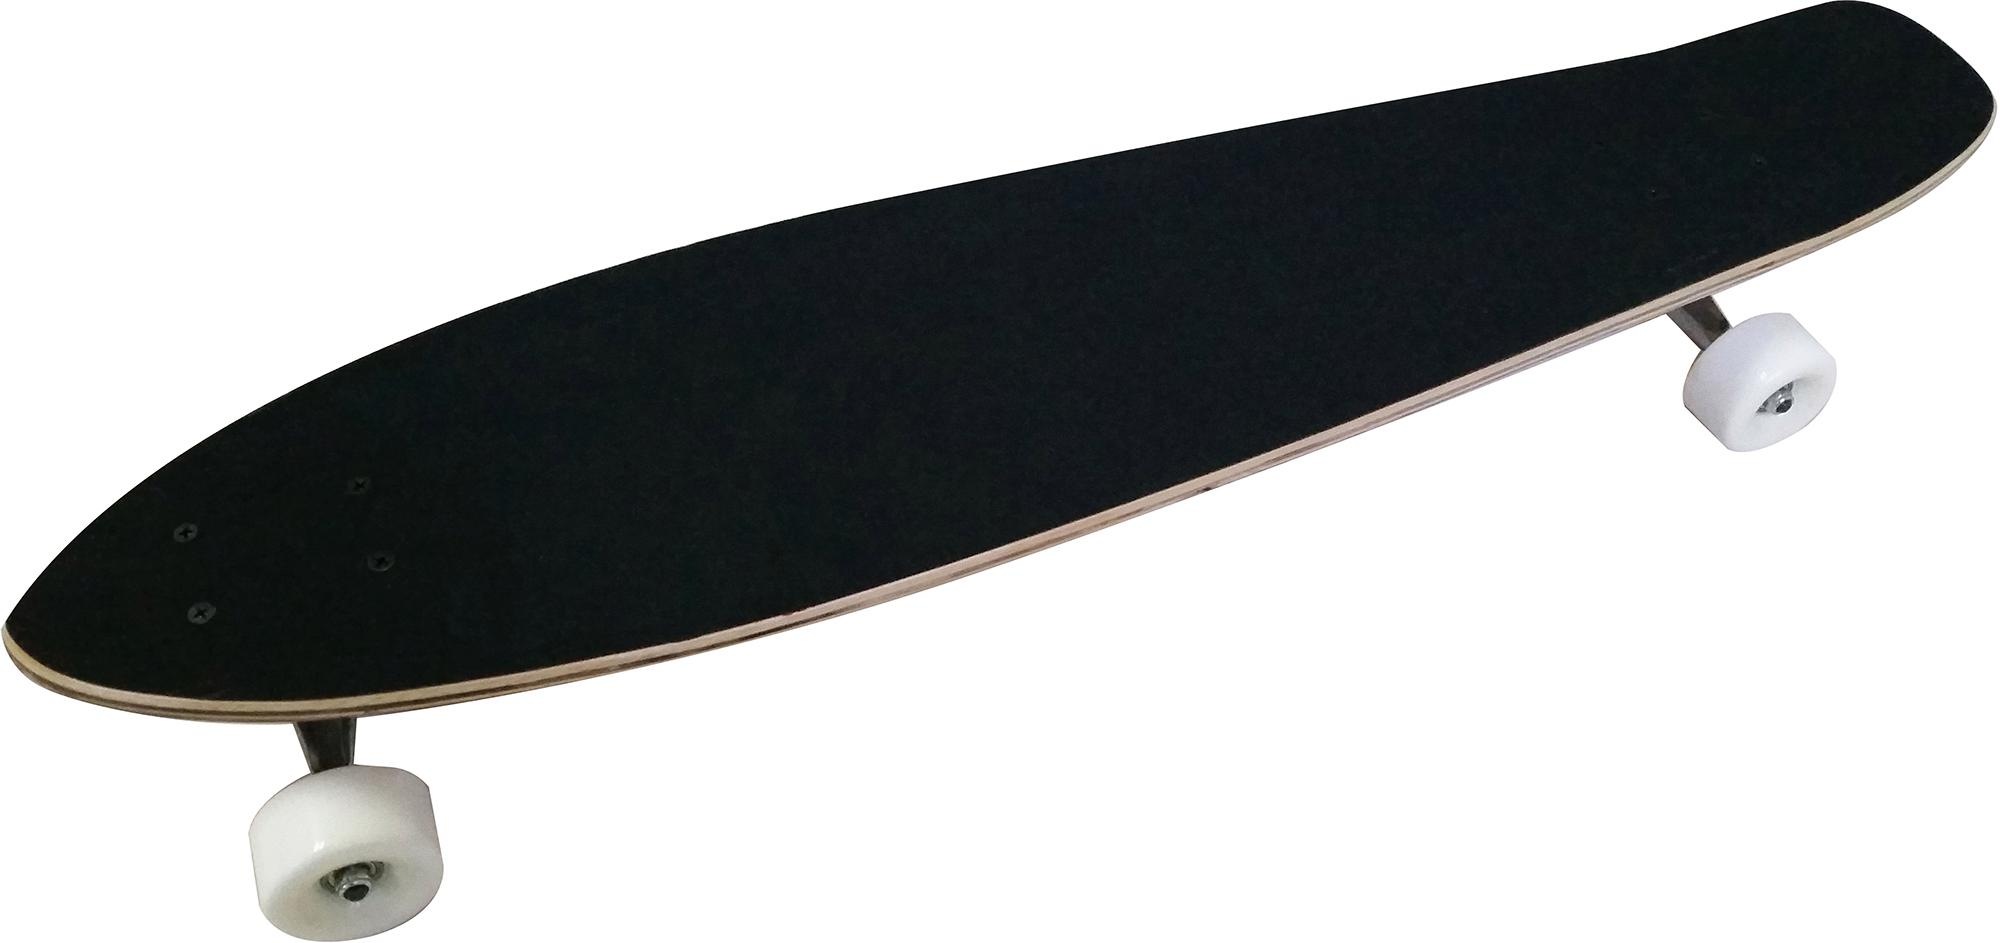 L.A. Sports Longboard »Longboard Concave Cruiser Board« bei